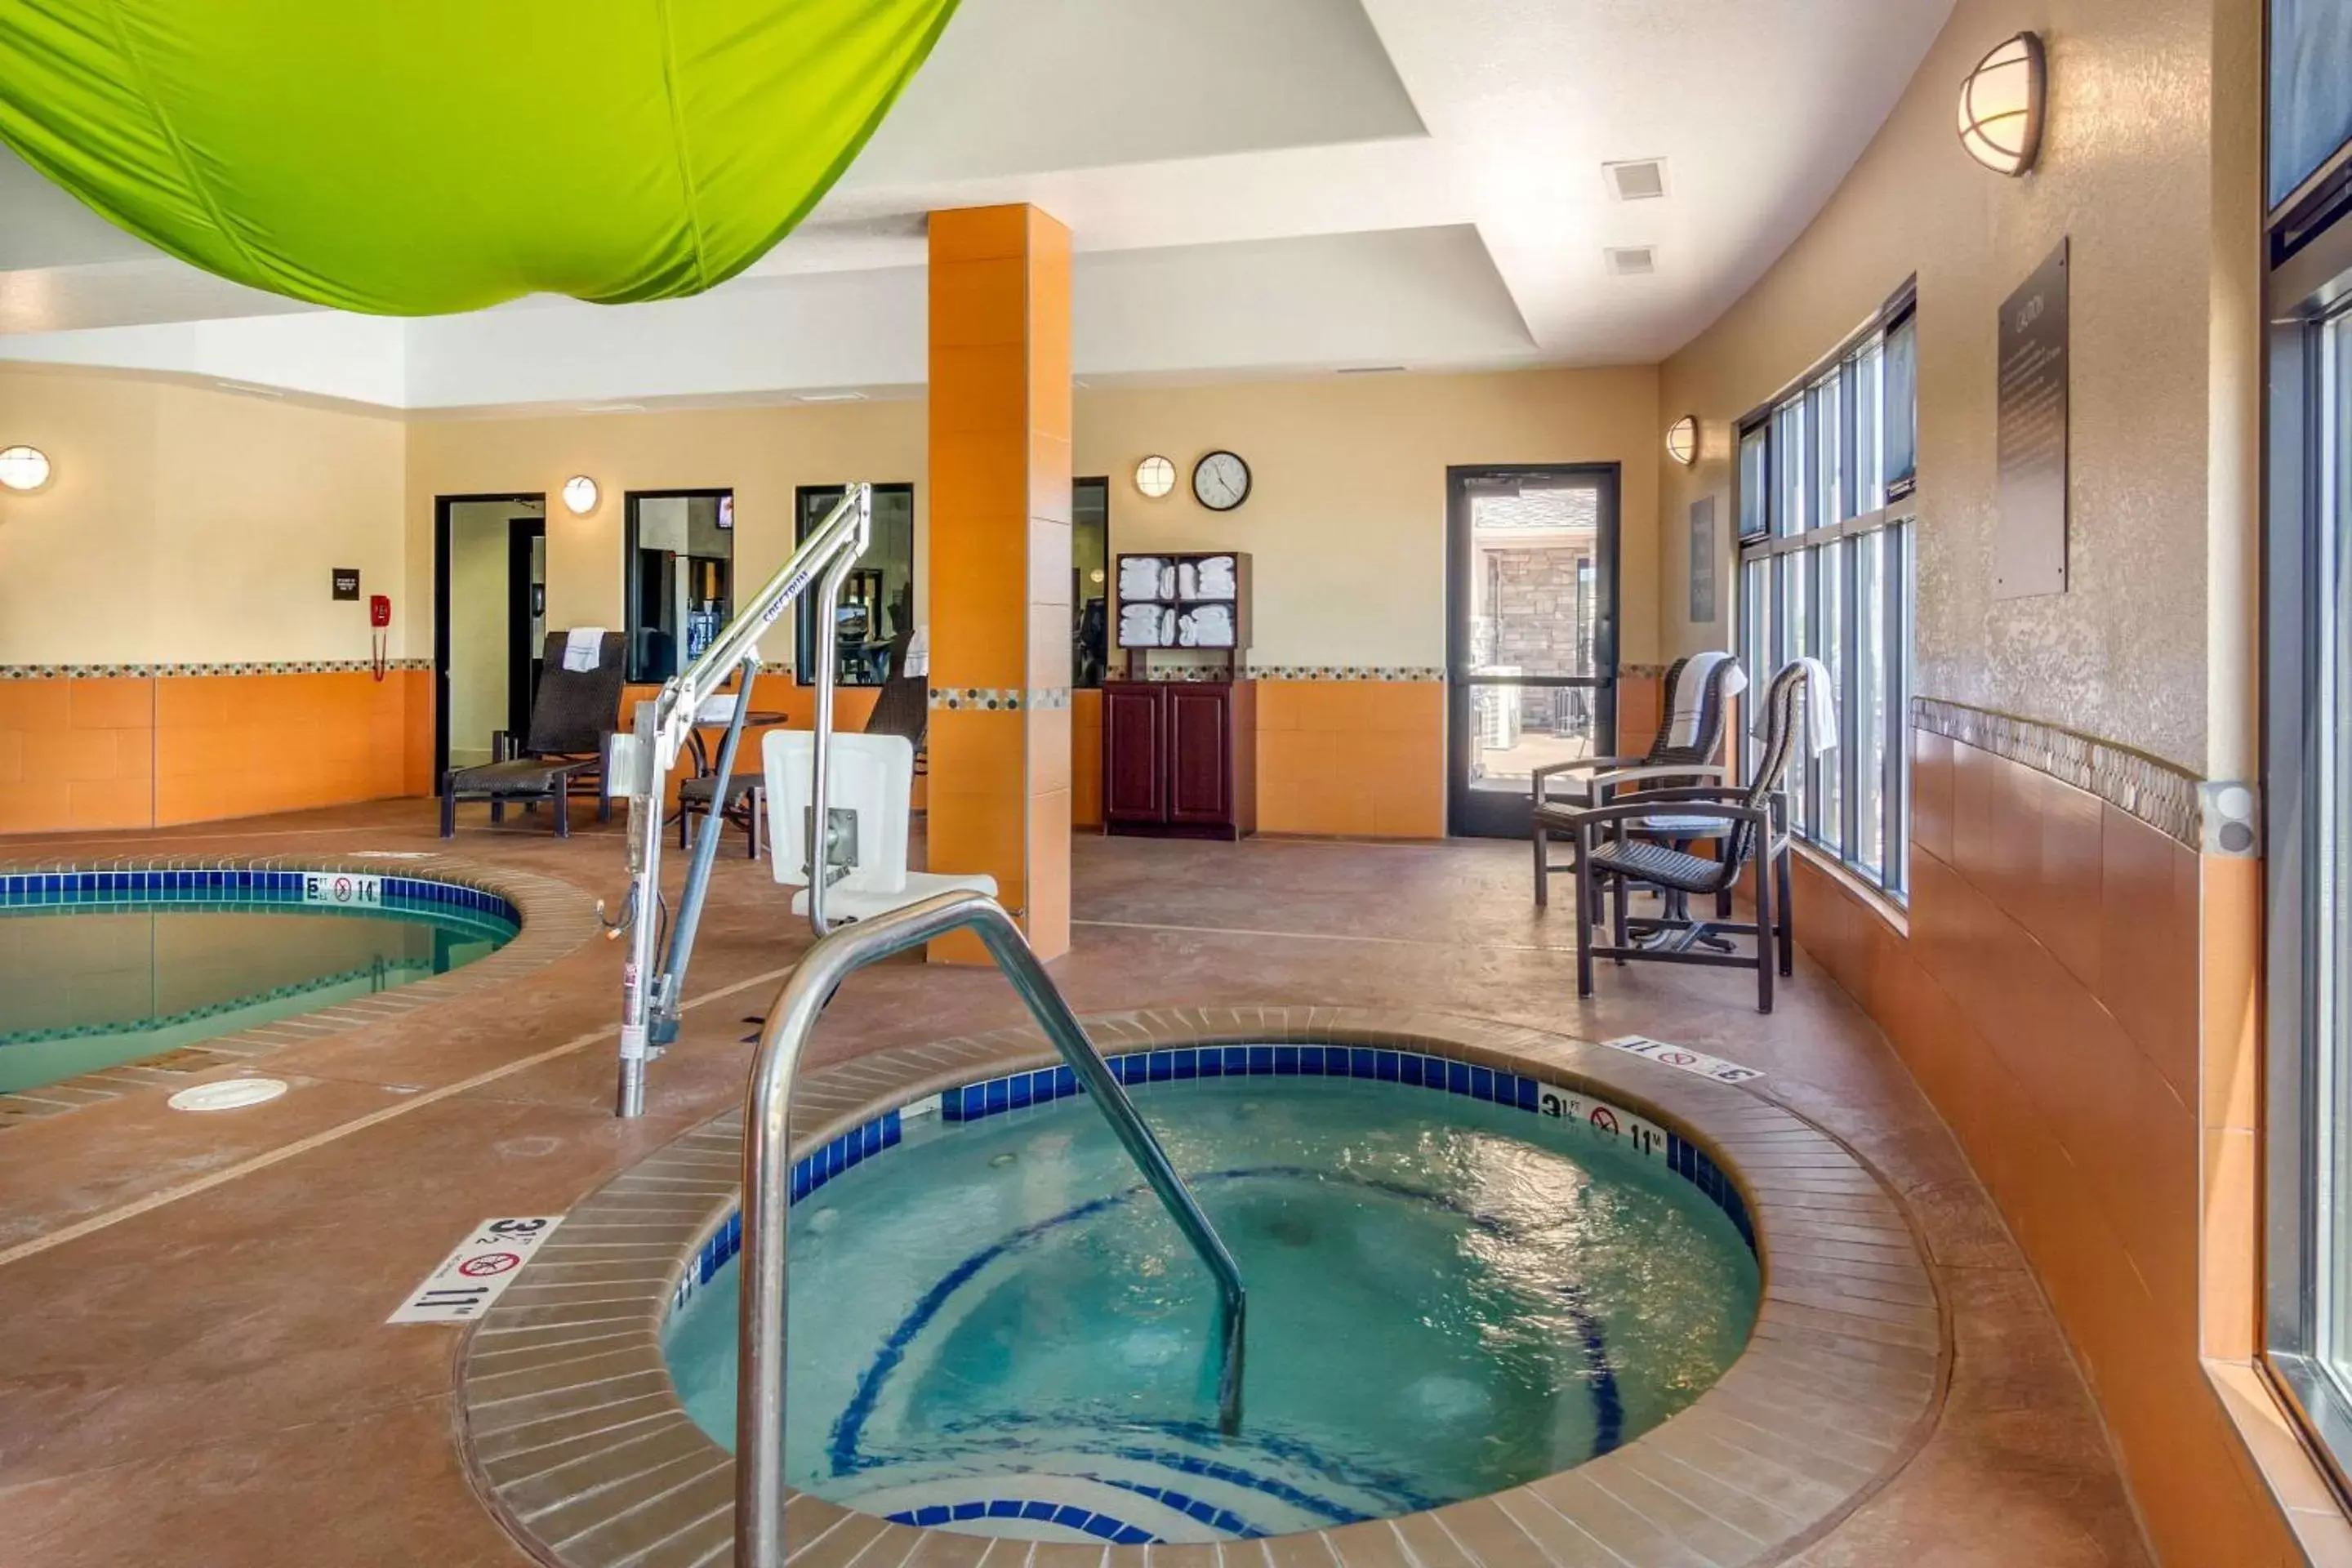 On site, Swimming Pool in Comfort Inn & Suites Brighton Denver NE Medical Center